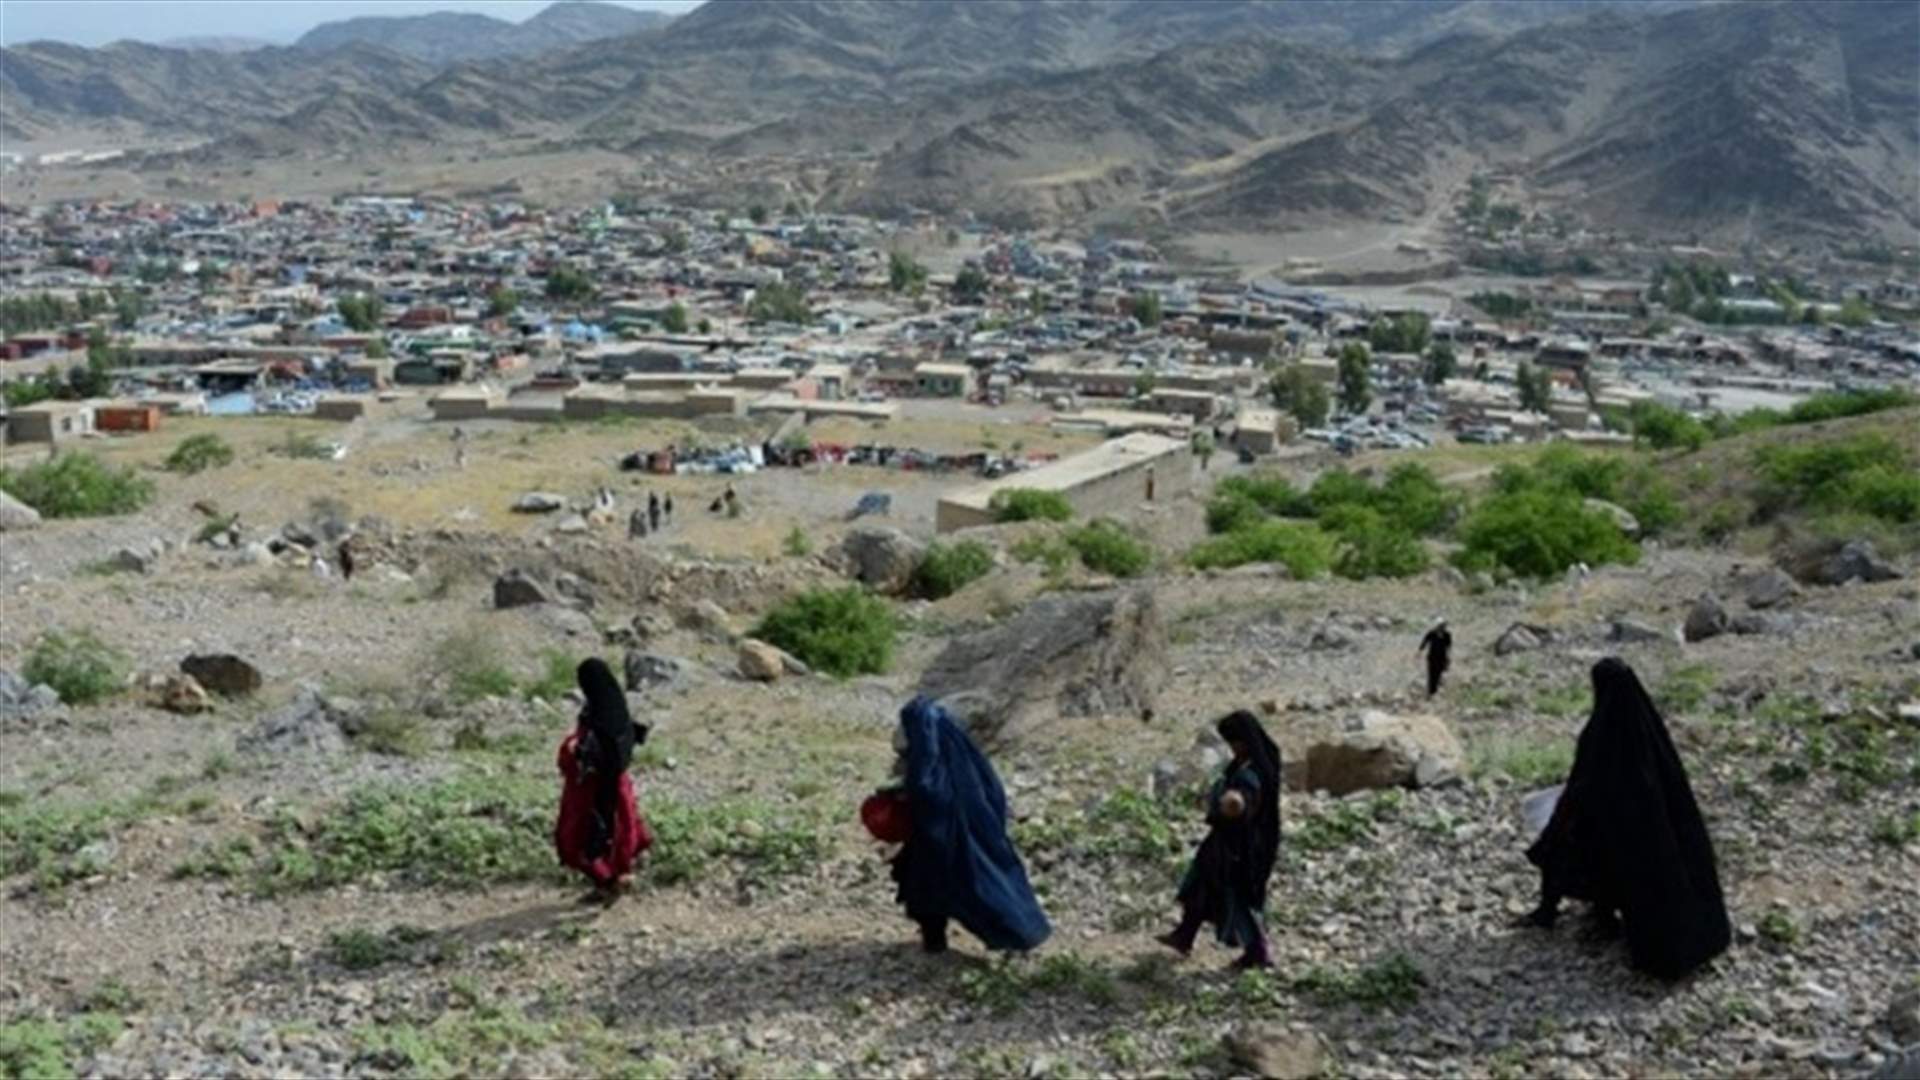  نصف مليون نازح في افغانستان جراء المعارك